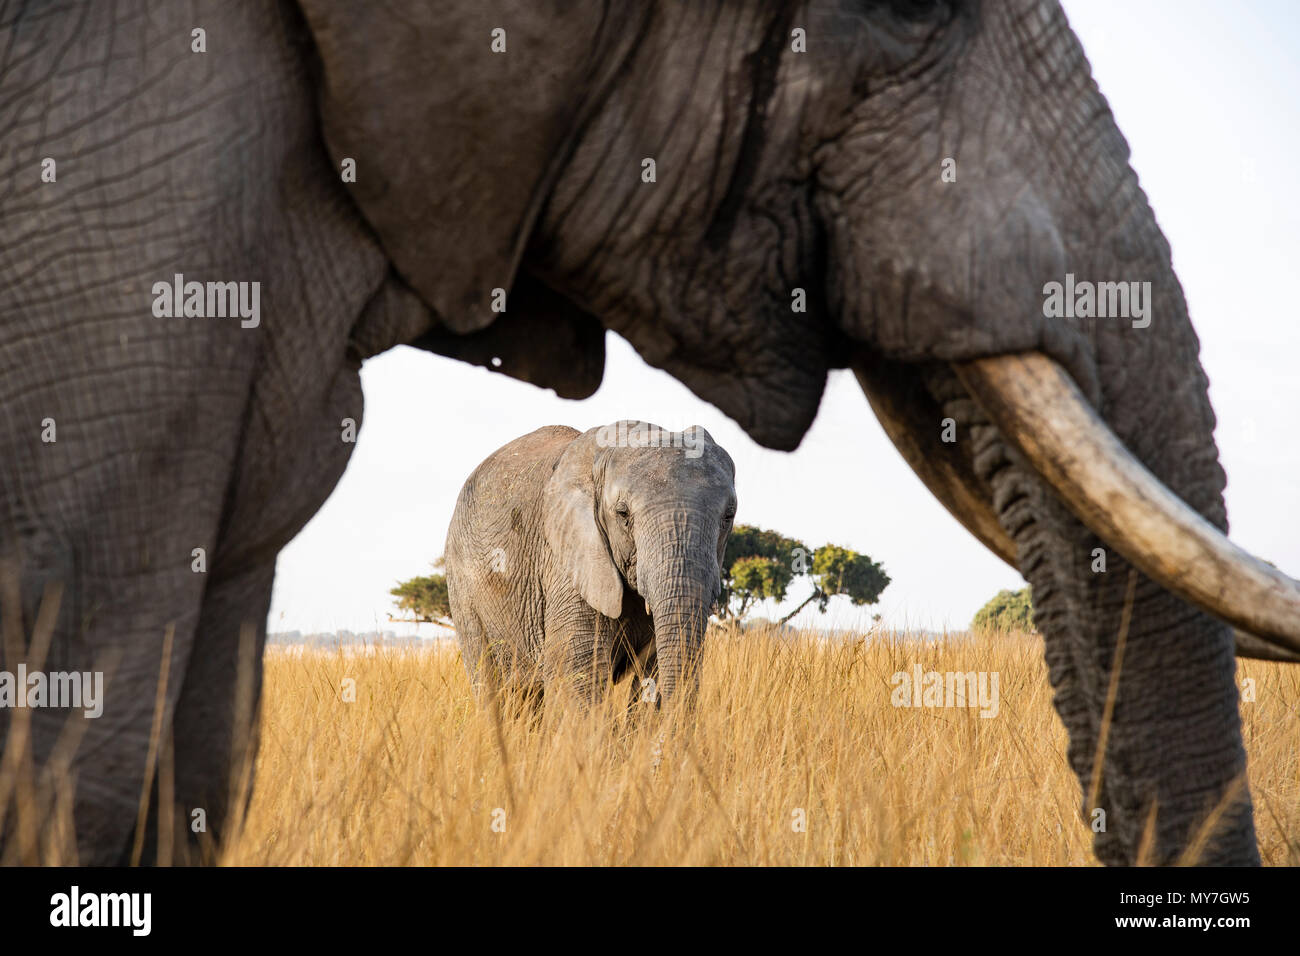 African elephants (Loxodonta africana), Imire Wildlife Conservation, Zimbabwe Stock Photo